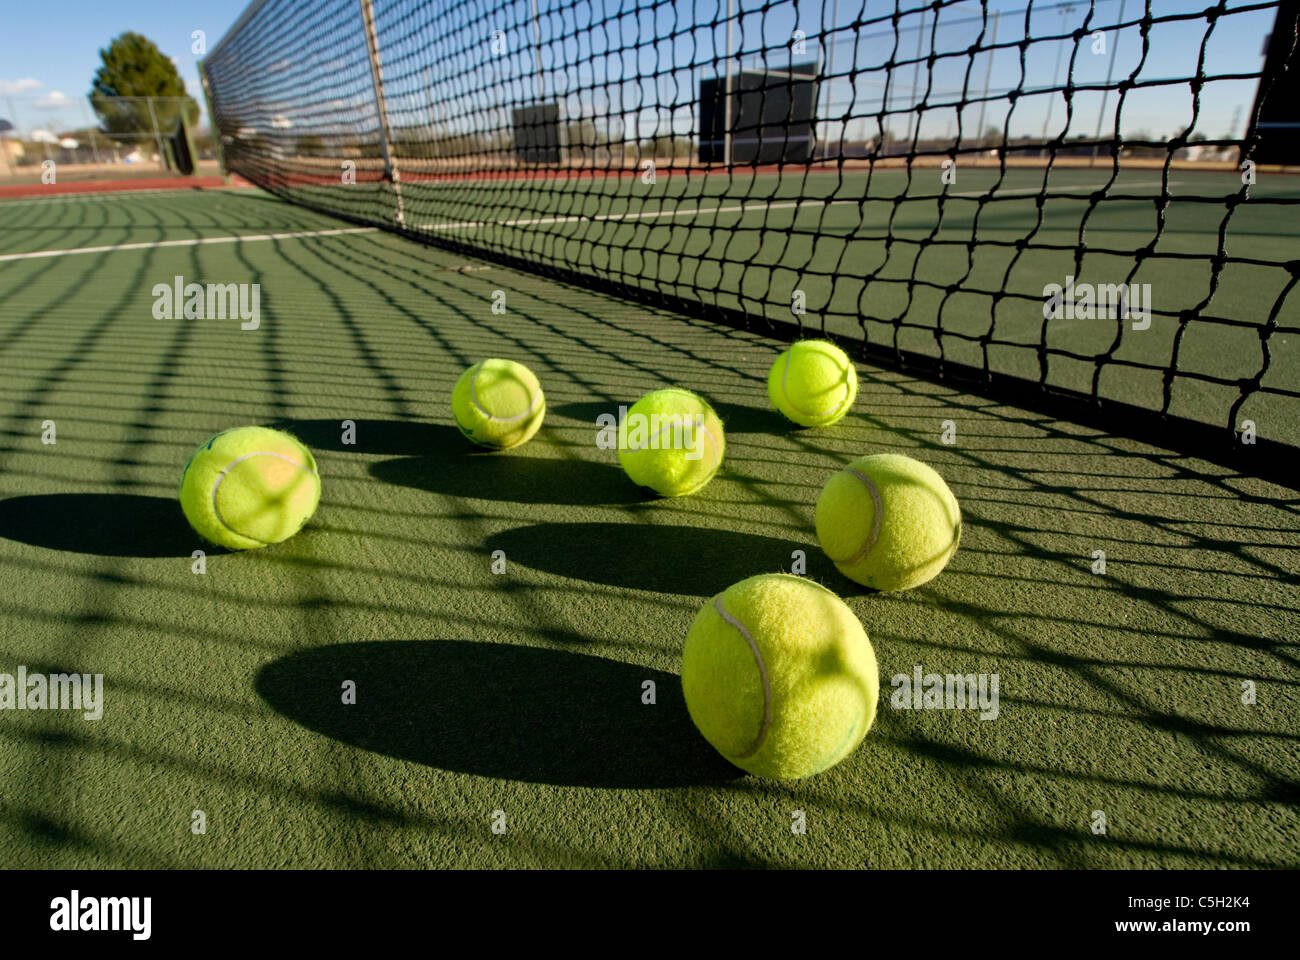 Ein Bild der Darstellung des Konzepts des Tennis, einschließlich der Gerichts- und Kugeln bei Sonnenuntergang. Stockfoto